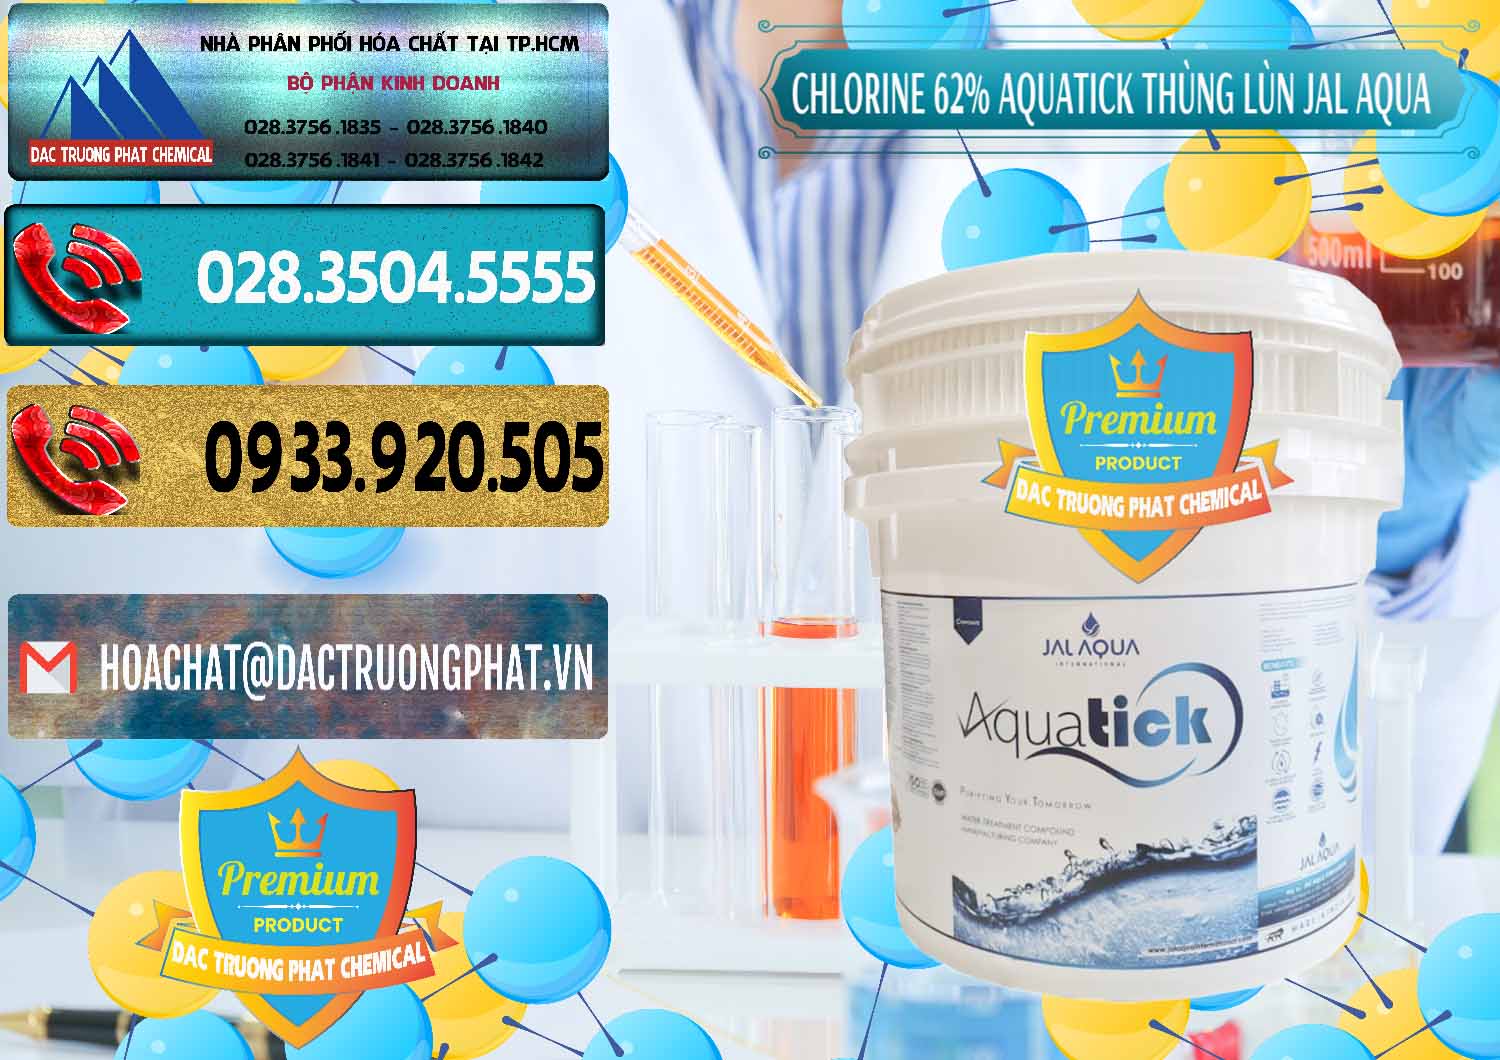 Chuyên bán _ phân phối Chlorine – Clorin 62% Aquatick Thùng Lùn Jal Aqua Ấn Độ India - 0238 - Đơn vị kinh doanh ( phân phối ) hóa chất tại TP.HCM - hoachatdetnhuom.com